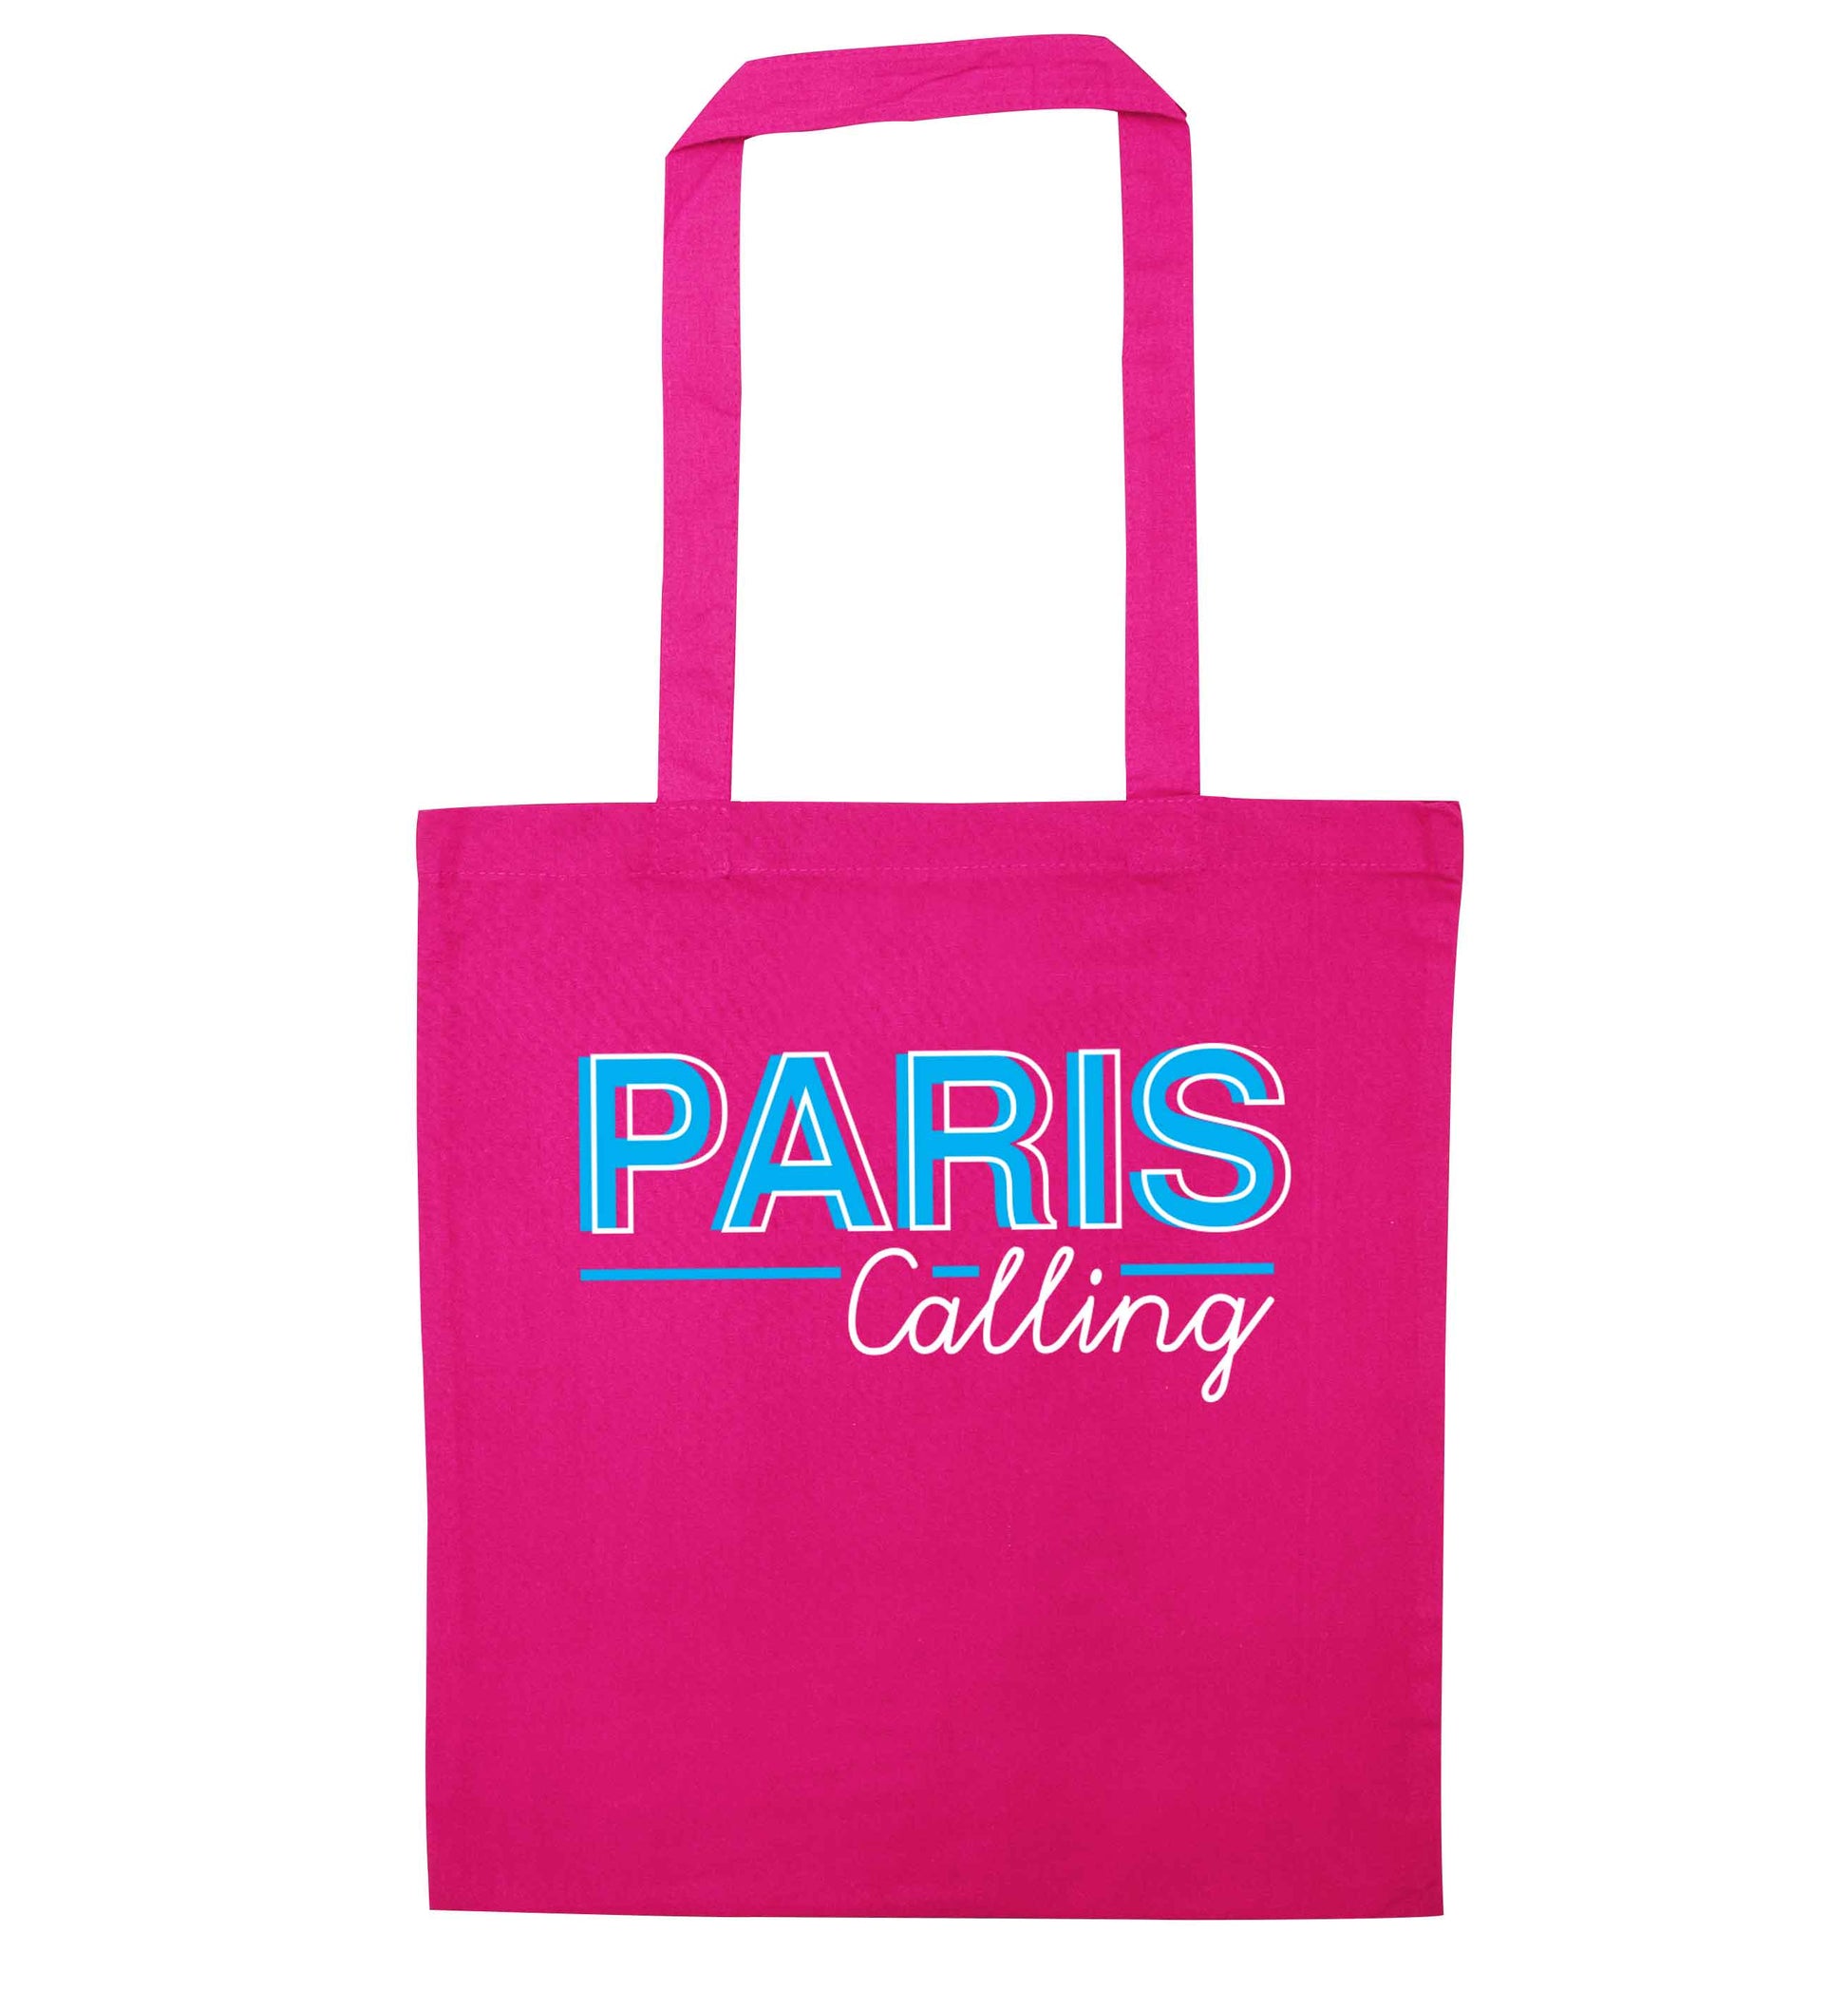 Paris calling pink tote bag